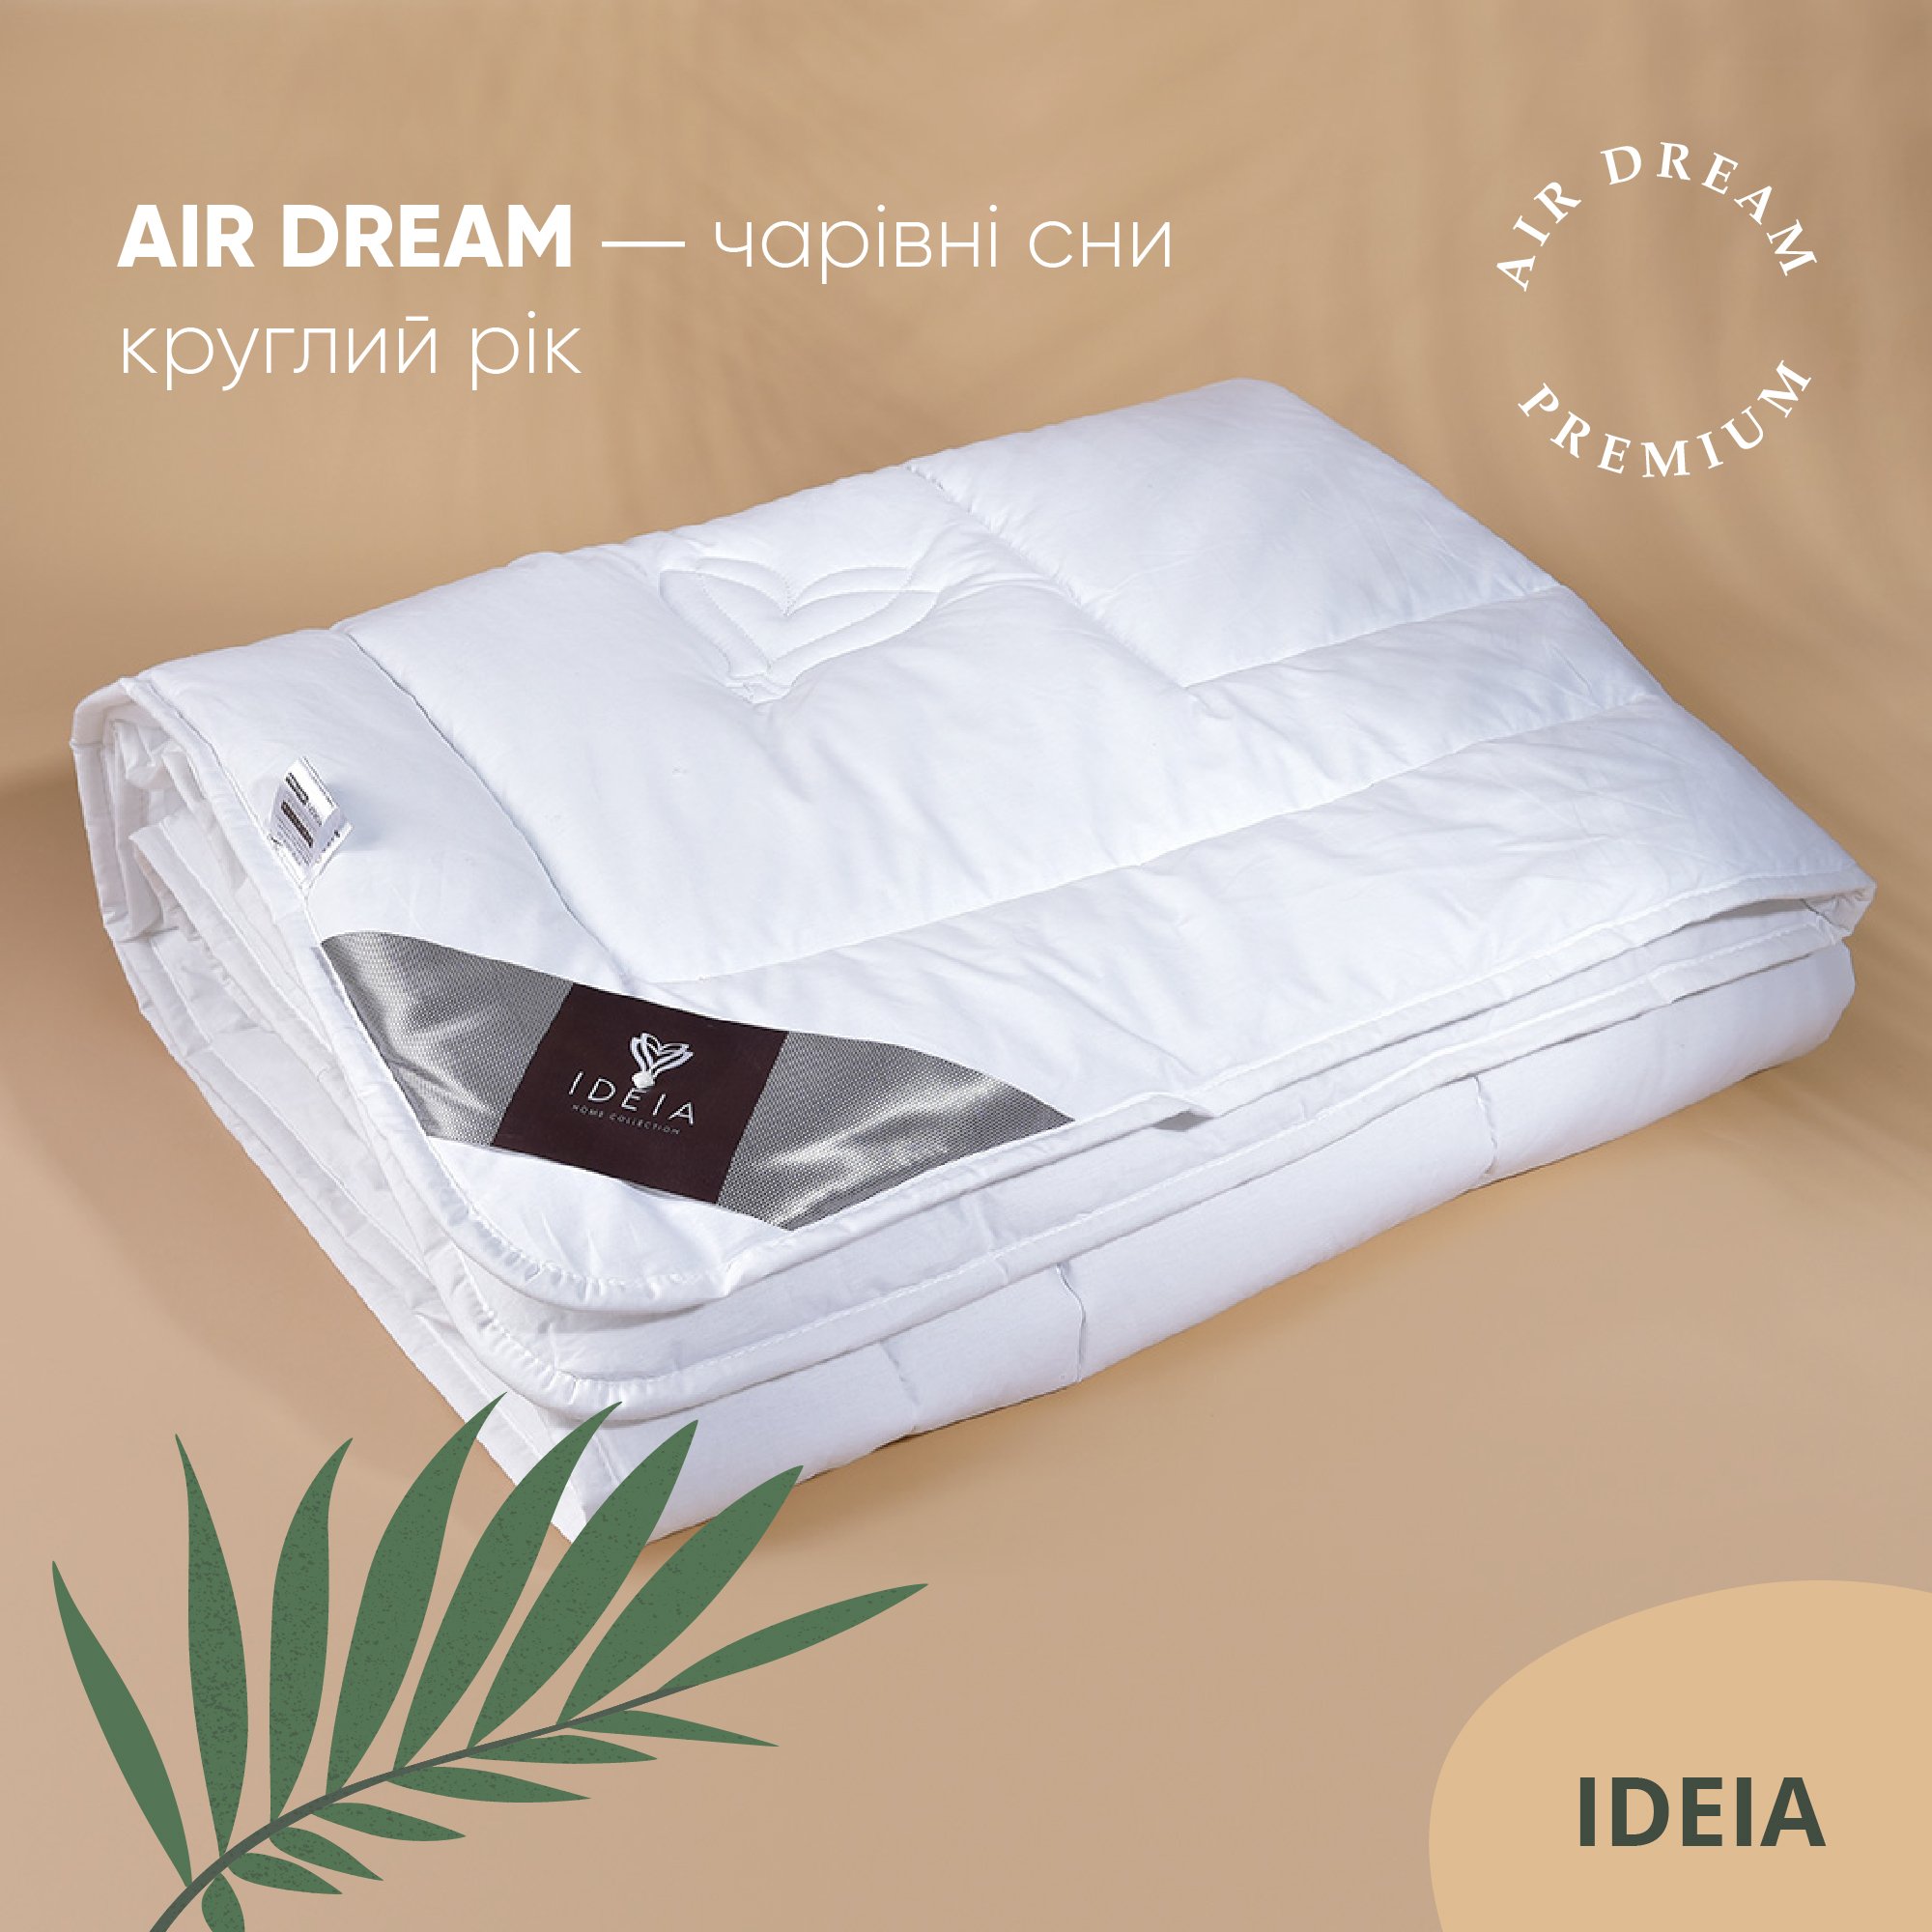 Ковдра Ideia Air Dream Premium зимова, 210х140, білий (8-11694) - фото 3